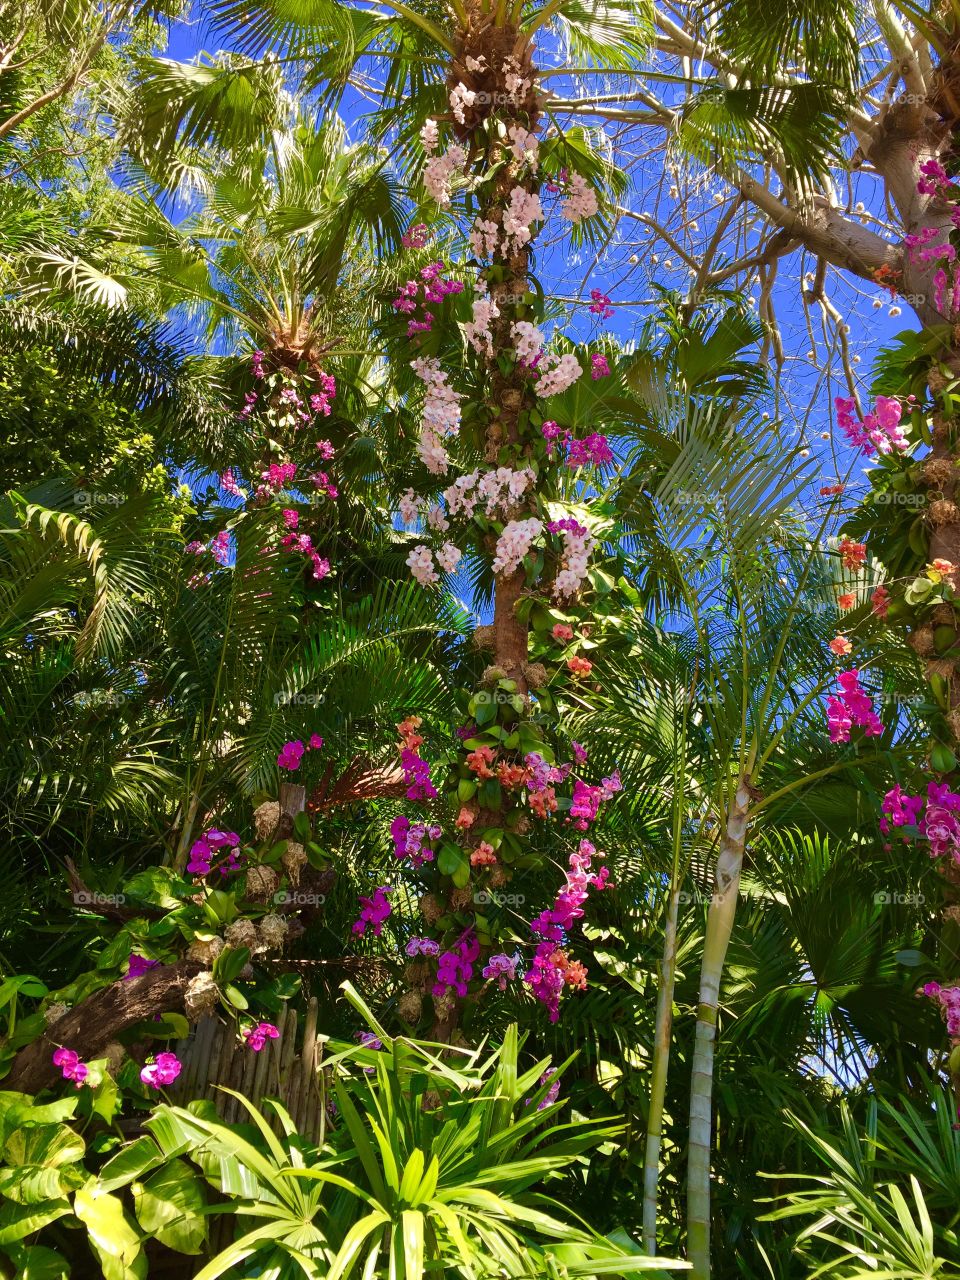 Tropical Garden in Disney World Florida 